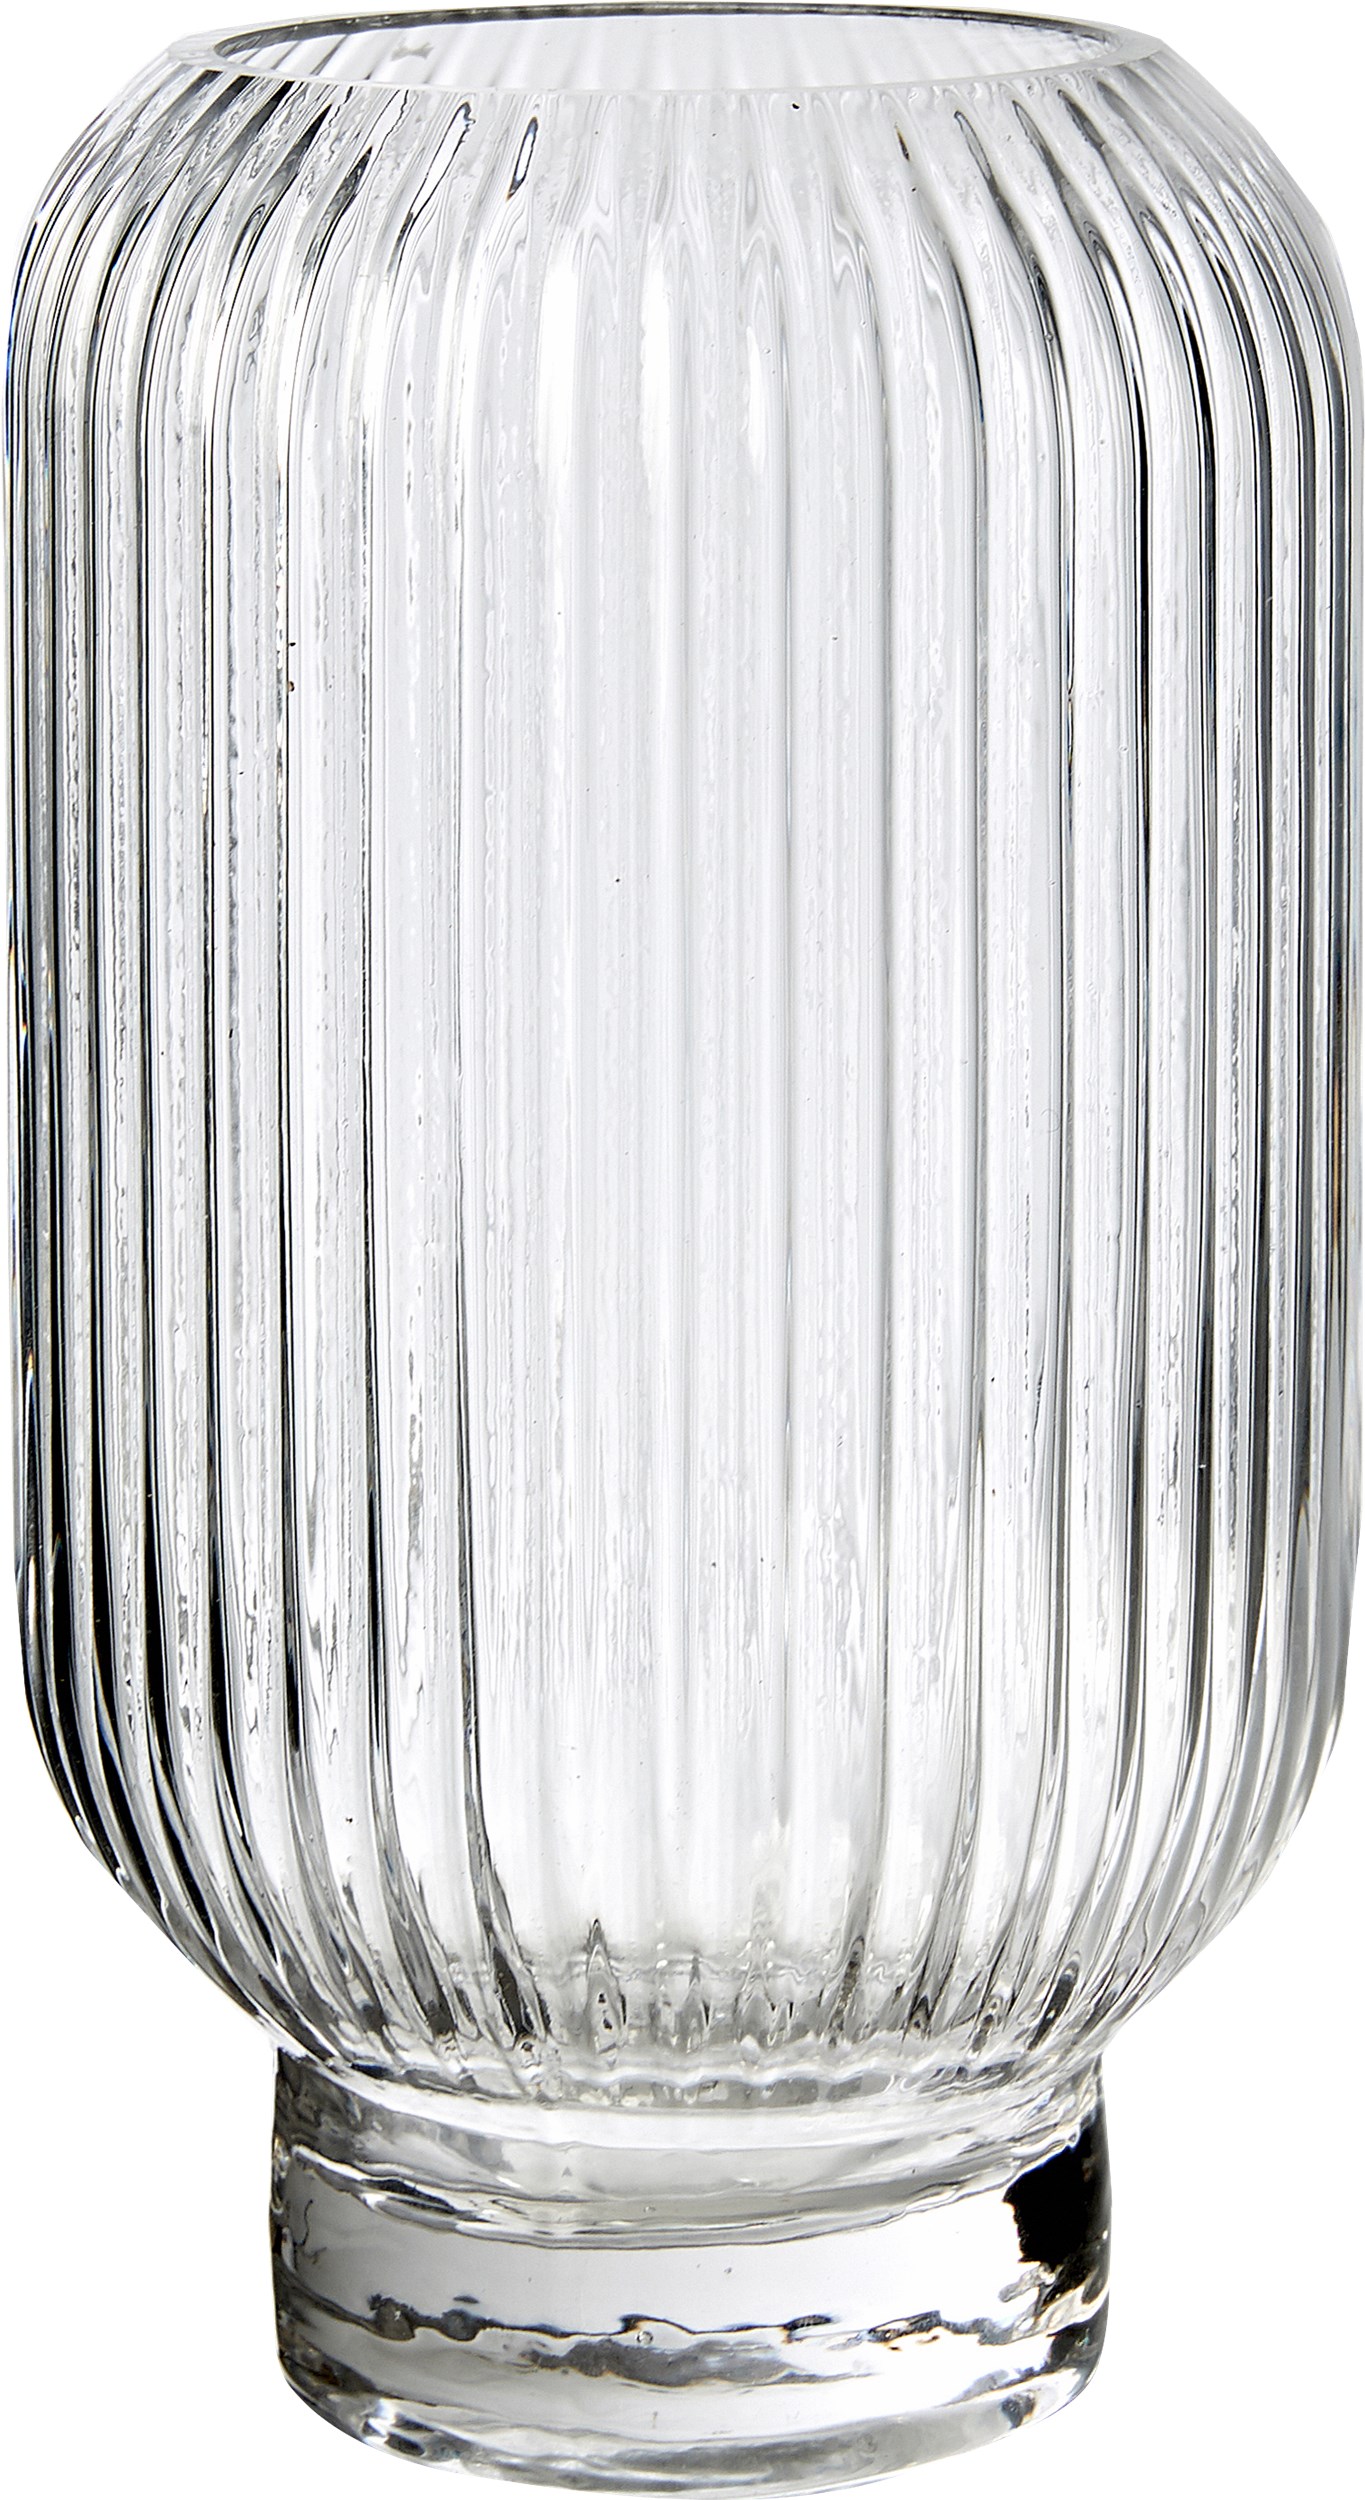 Jinx vas 21,5 x 12 cm - Genomskinligt glas och räfflat mönster